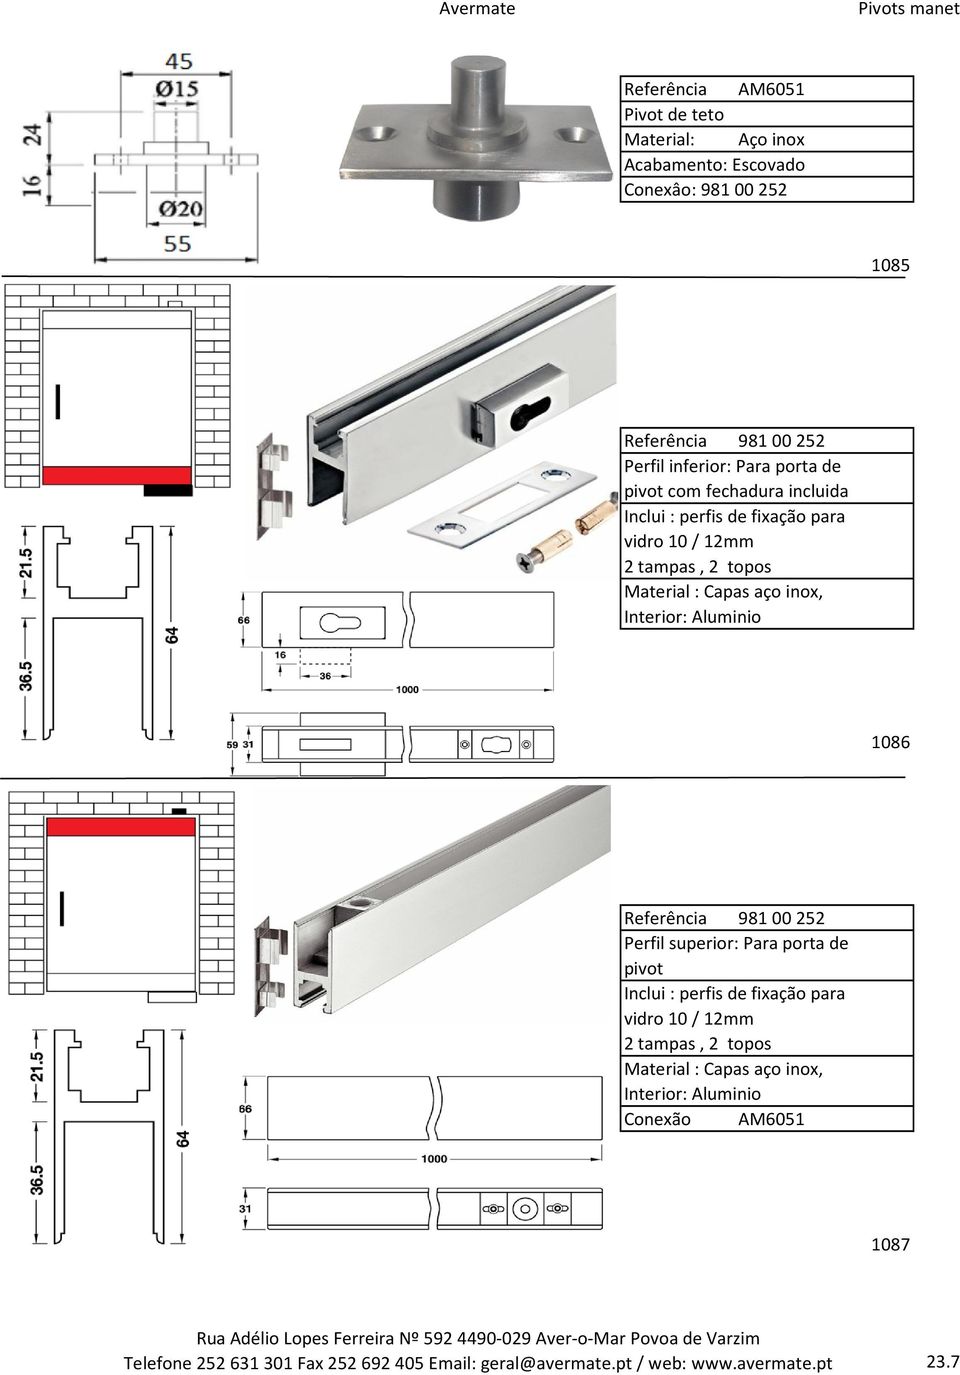 Referência 98100252 Perfil superior: Para porta de pivot Inclui : perfis de fixação para vidro 10 / 12mm 2 tampas, 2 topos Material :